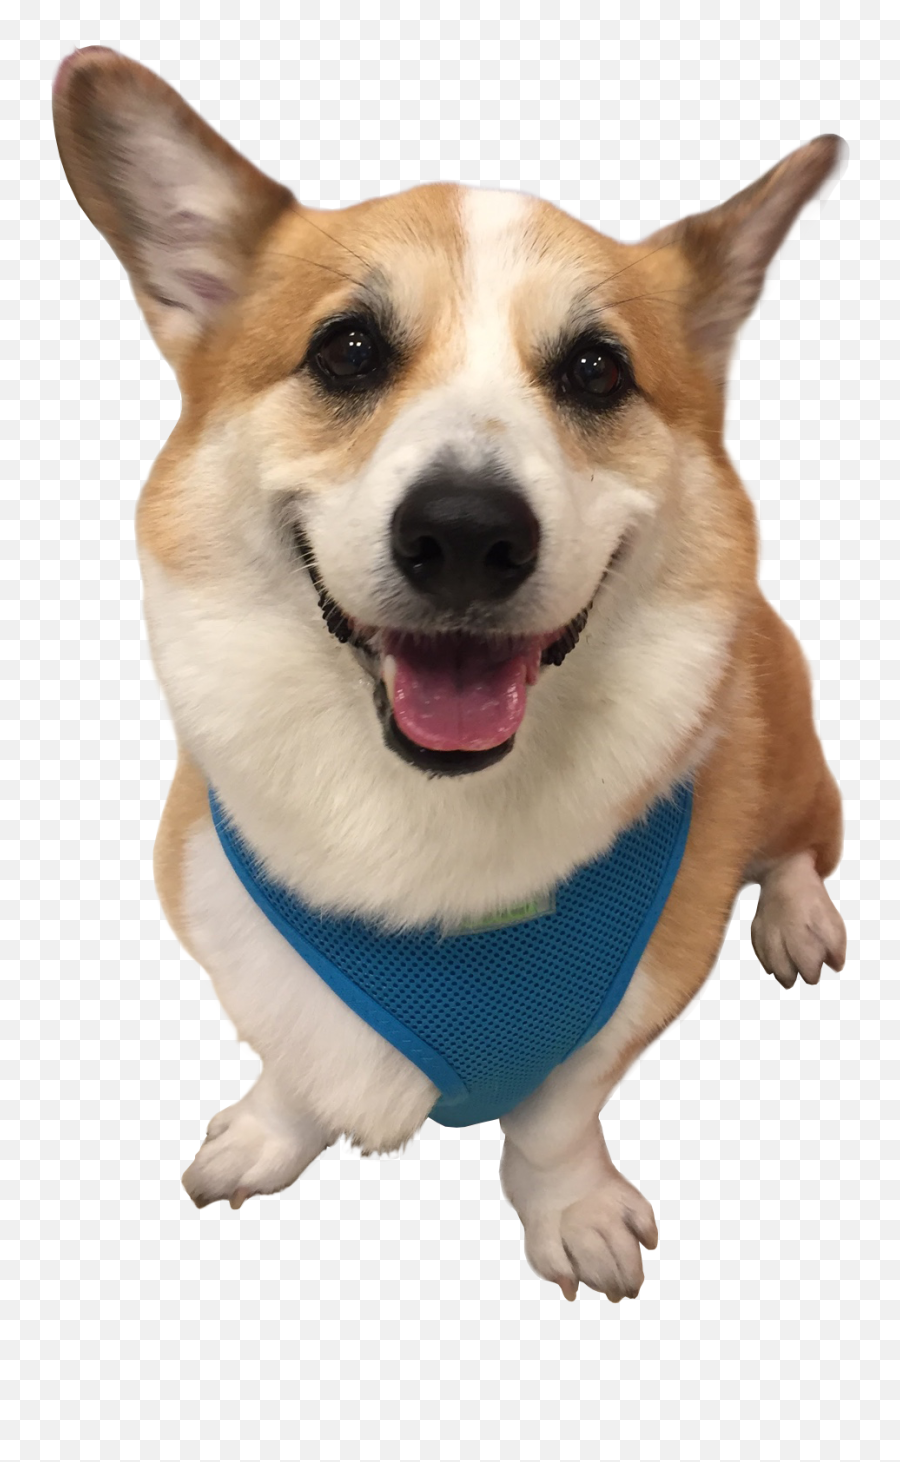 1 - Corgi Dog Transparent Background Emoji,Corgi Transparent